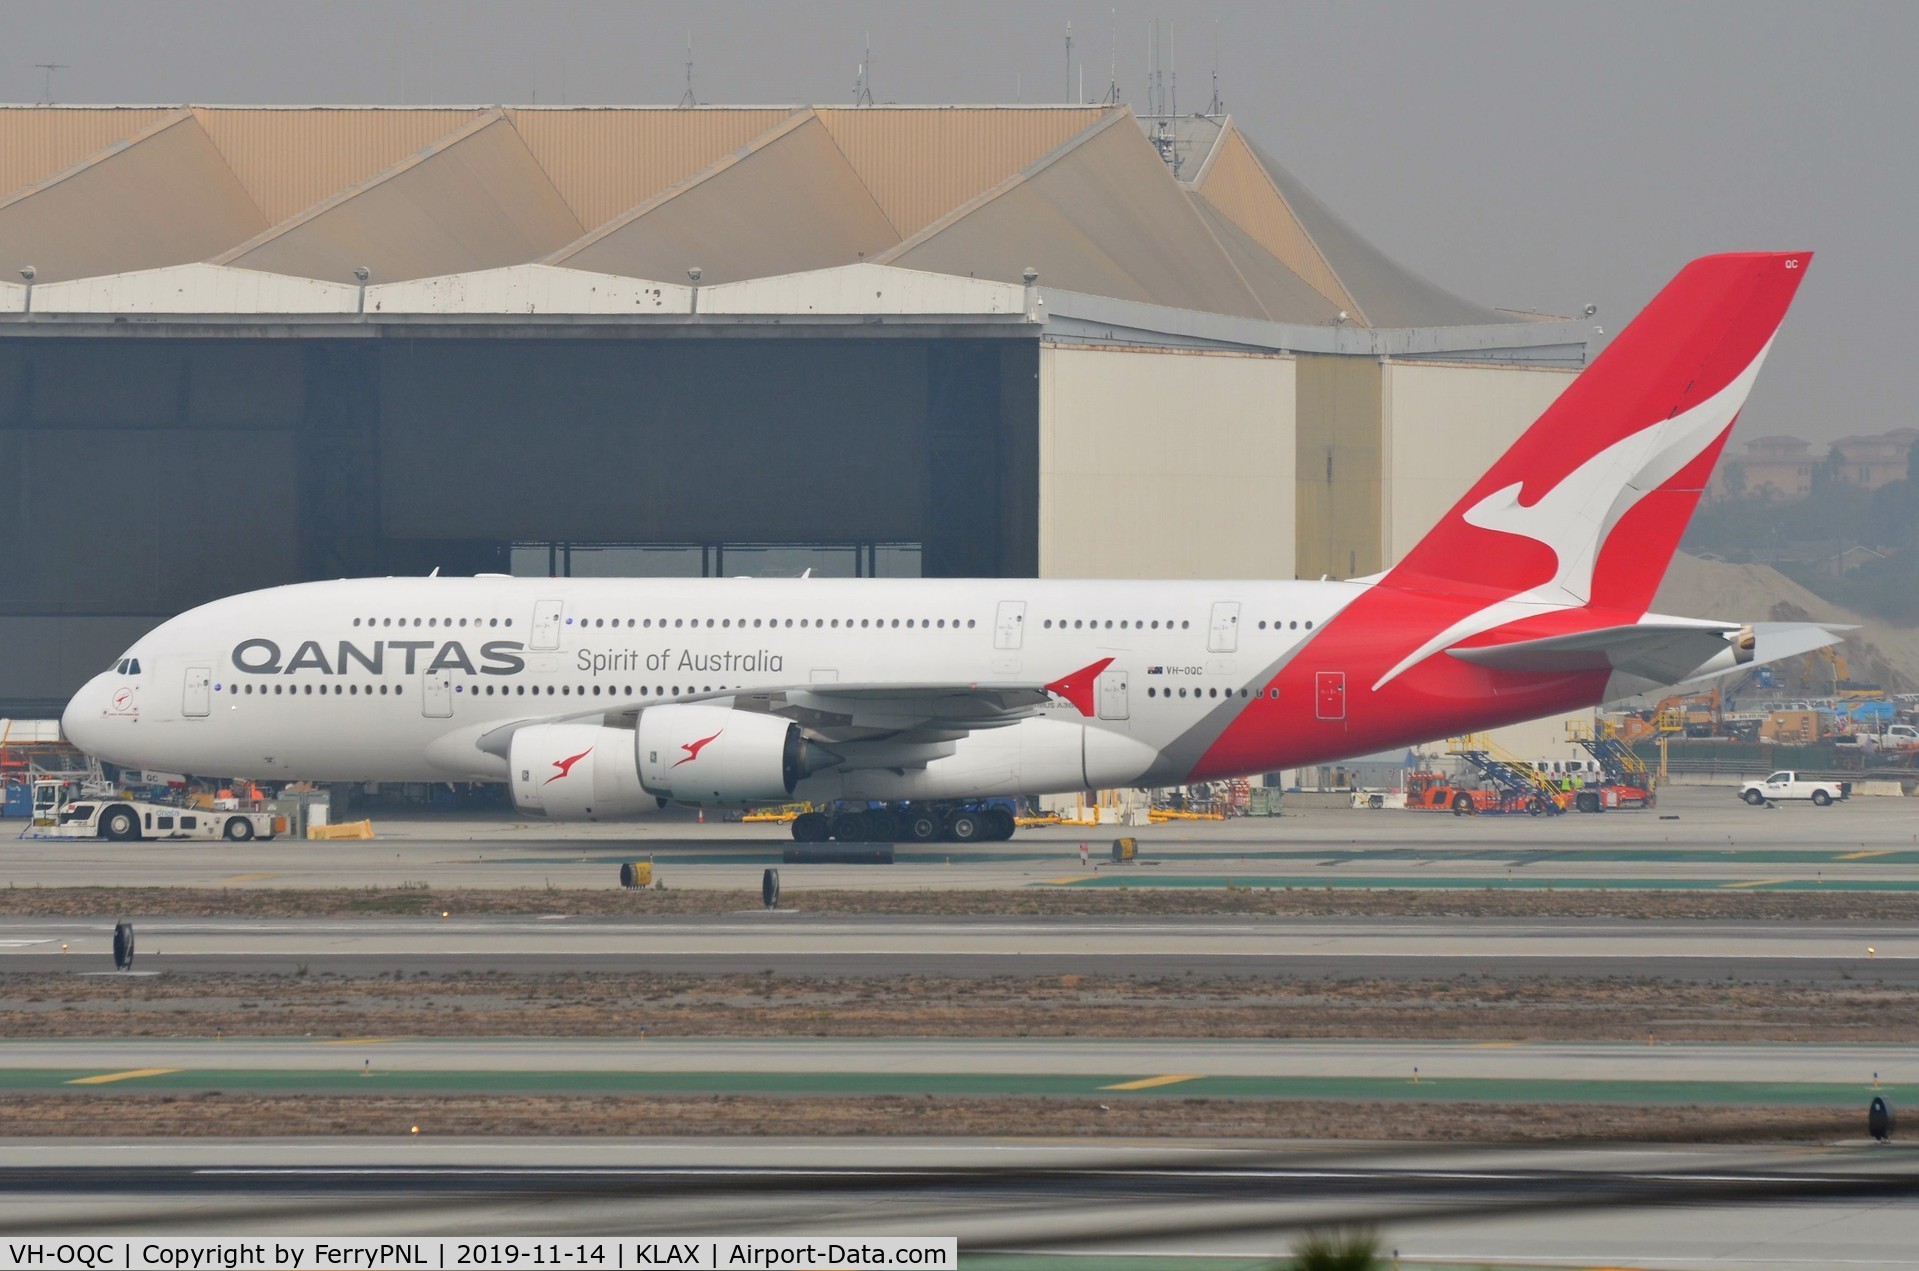 VH-OQC, 2008 Airbus A380-842 C/N 022, Qantas A388 off to the far stand.